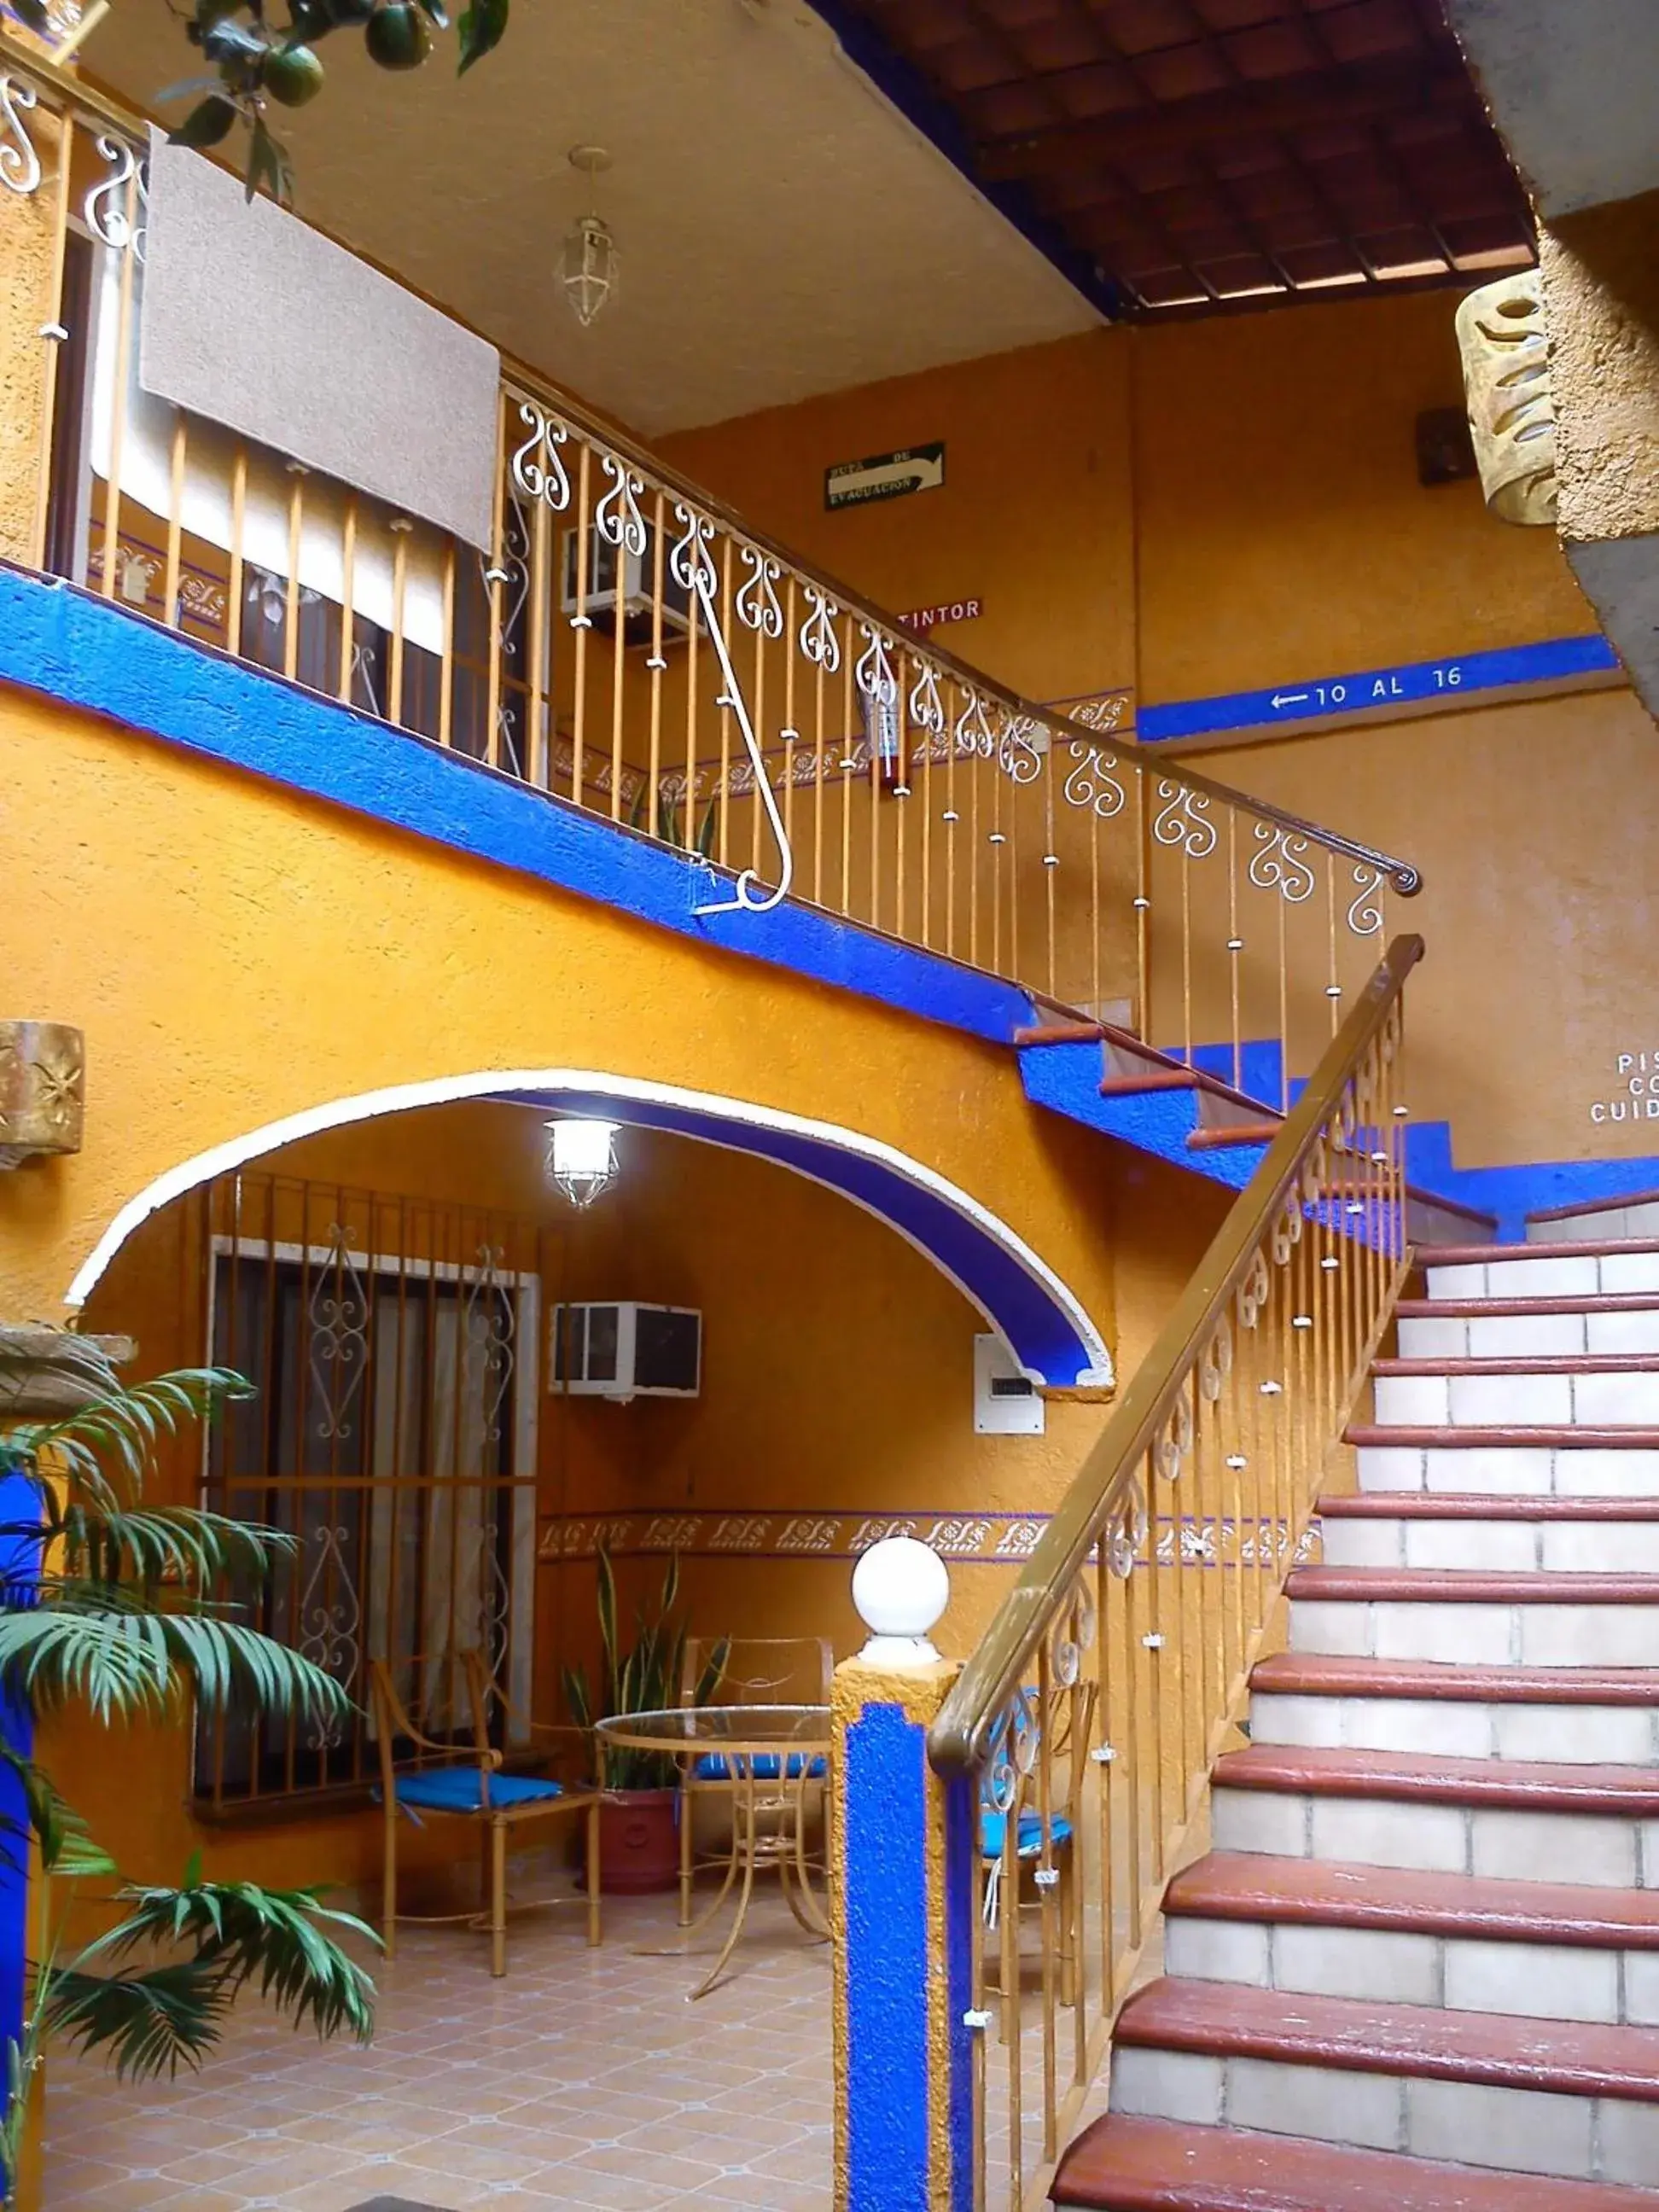 Area and facilities in CasaGrande Posada Ejecutiva